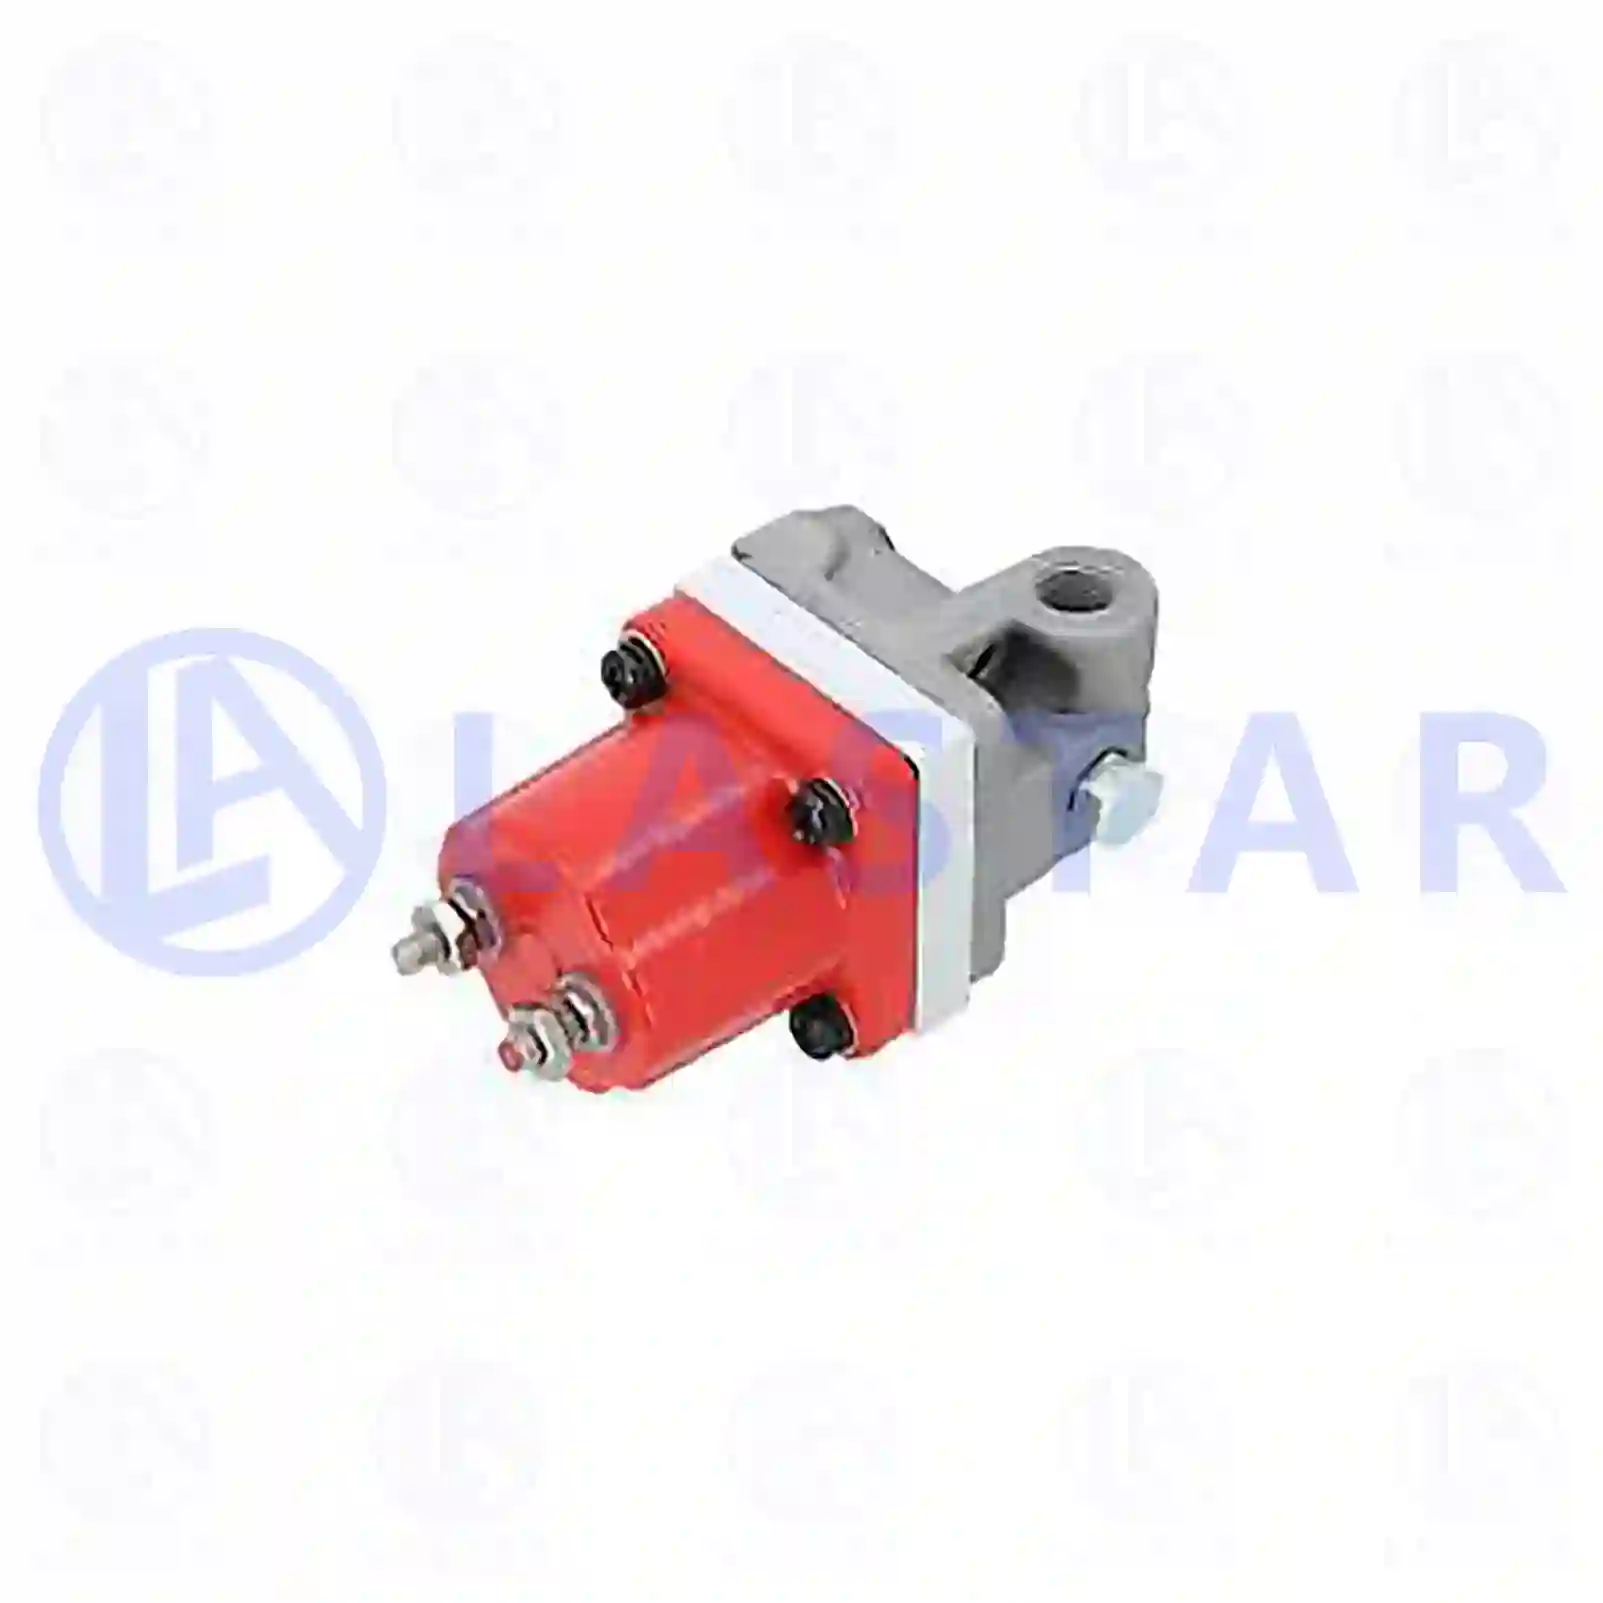  Fuel valve || Lastar Spare Part | Truck Spare Parts, Auotomotive Spare Parts